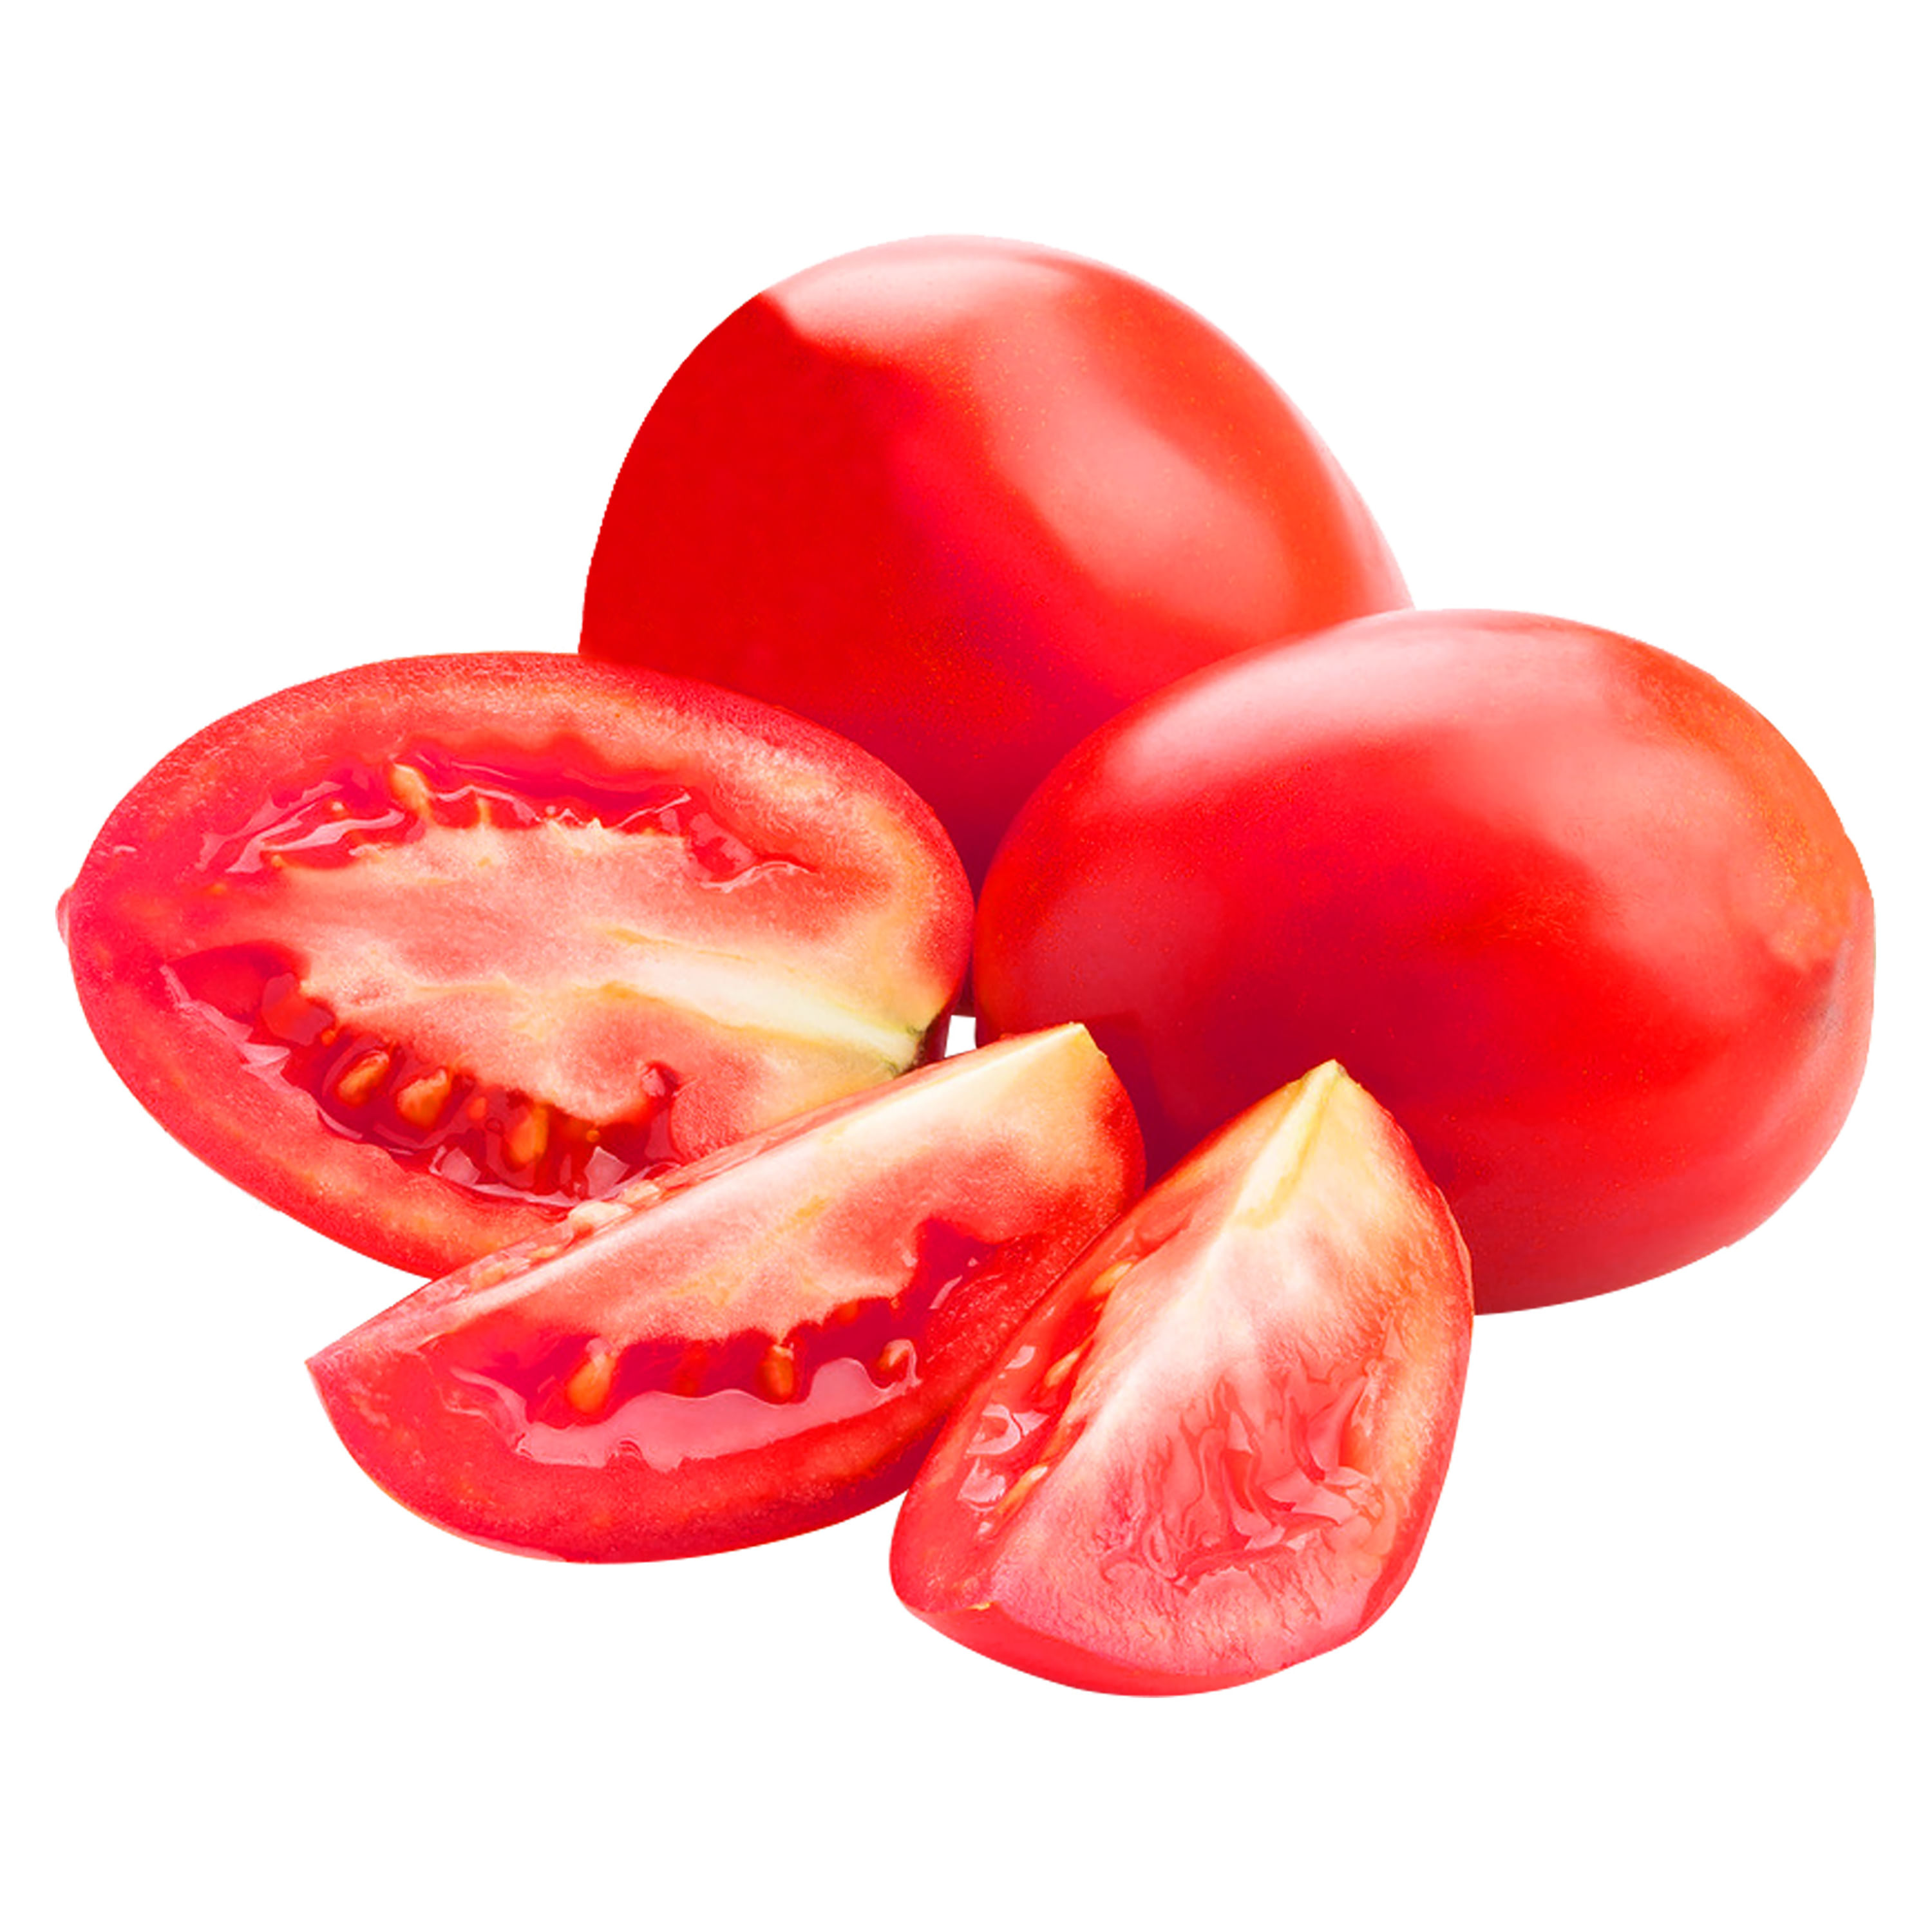 Tomate-Criollo-Hortifruti-4-unidades-por-libra-Precio-Indicado-Por-Libra-1-78